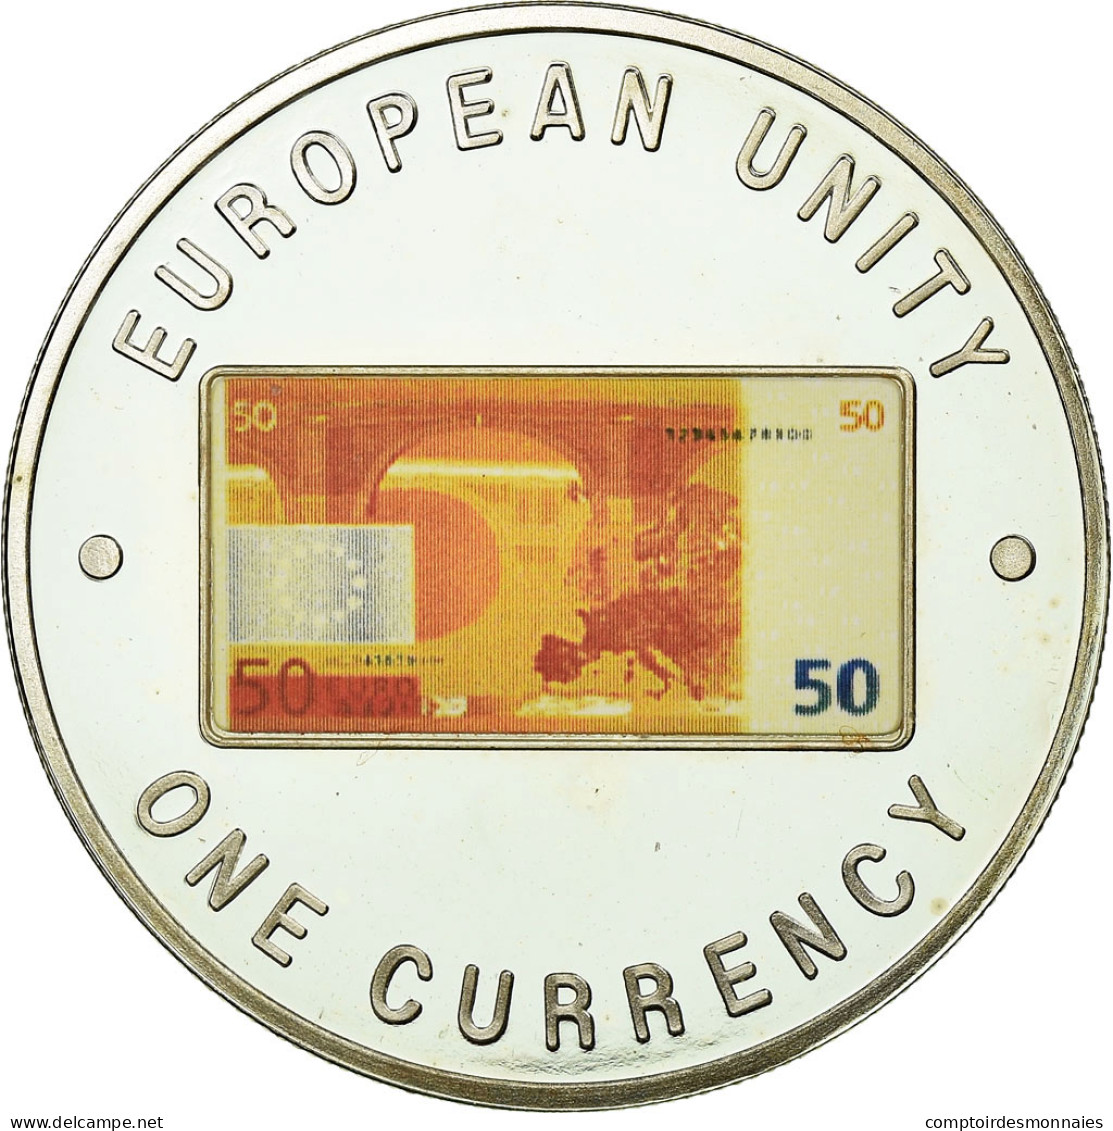 Monnaie, Zambie, 1000 Kwacha, 1999, British Royal Mint, FDC, Silver Plated - Zambie